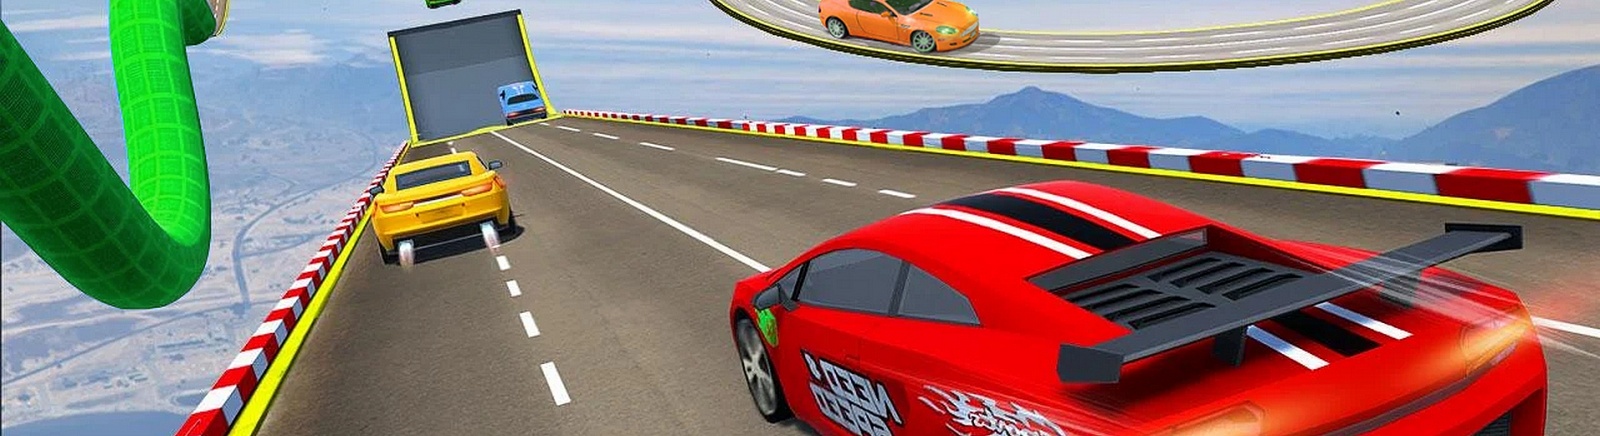 Дата выхода Car Stunt Racing - Mega Ramp Car Jumping  на Android в России и во всем мире